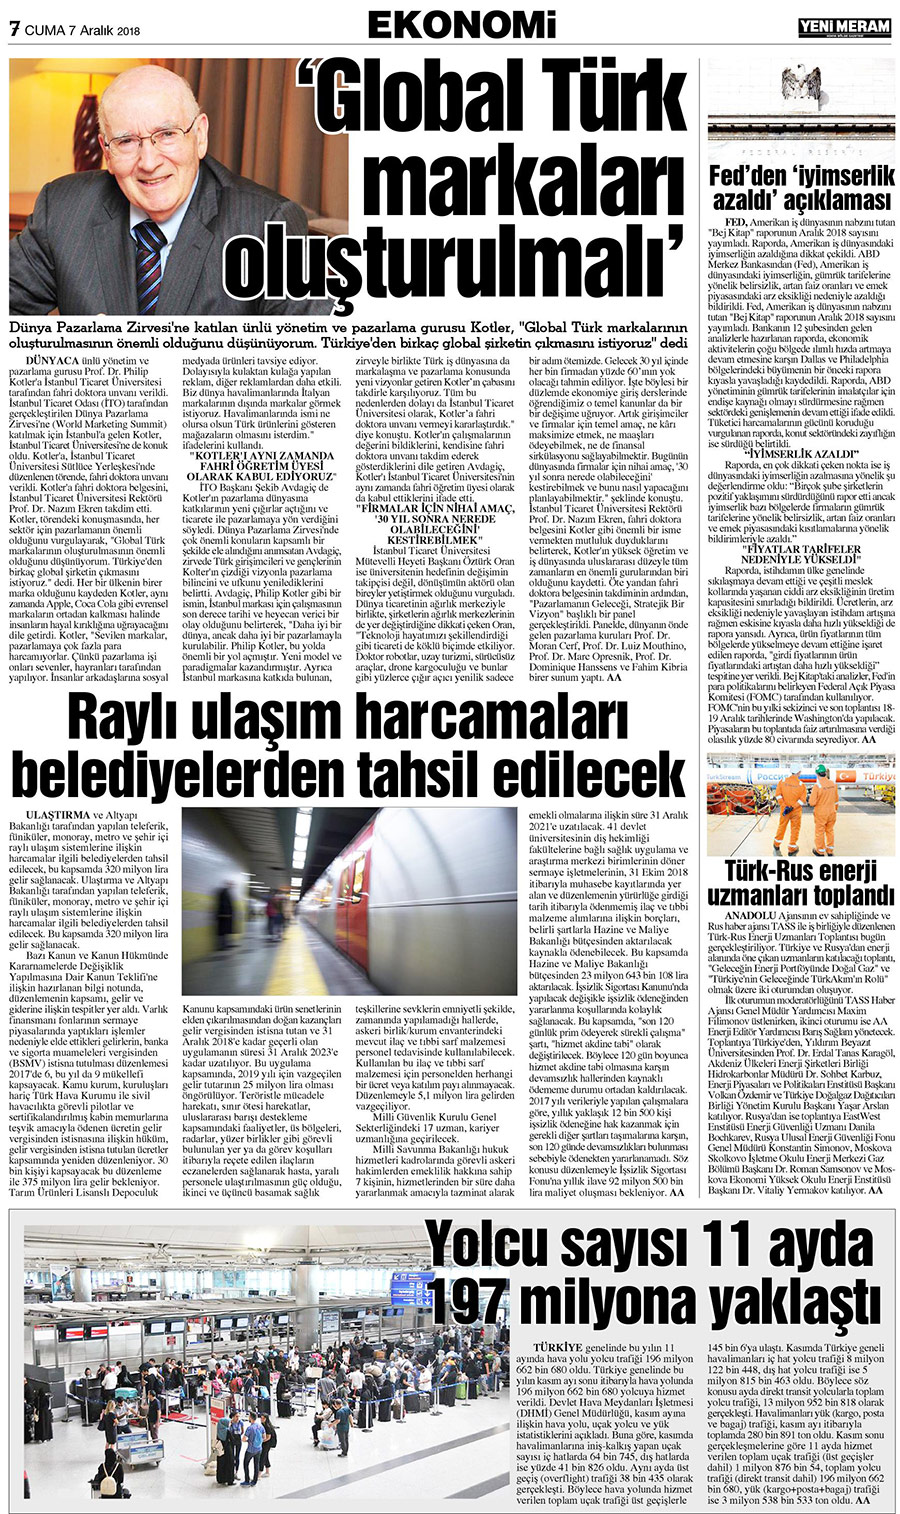 7 Aralık 2018 Yeni Meram Gazetesi